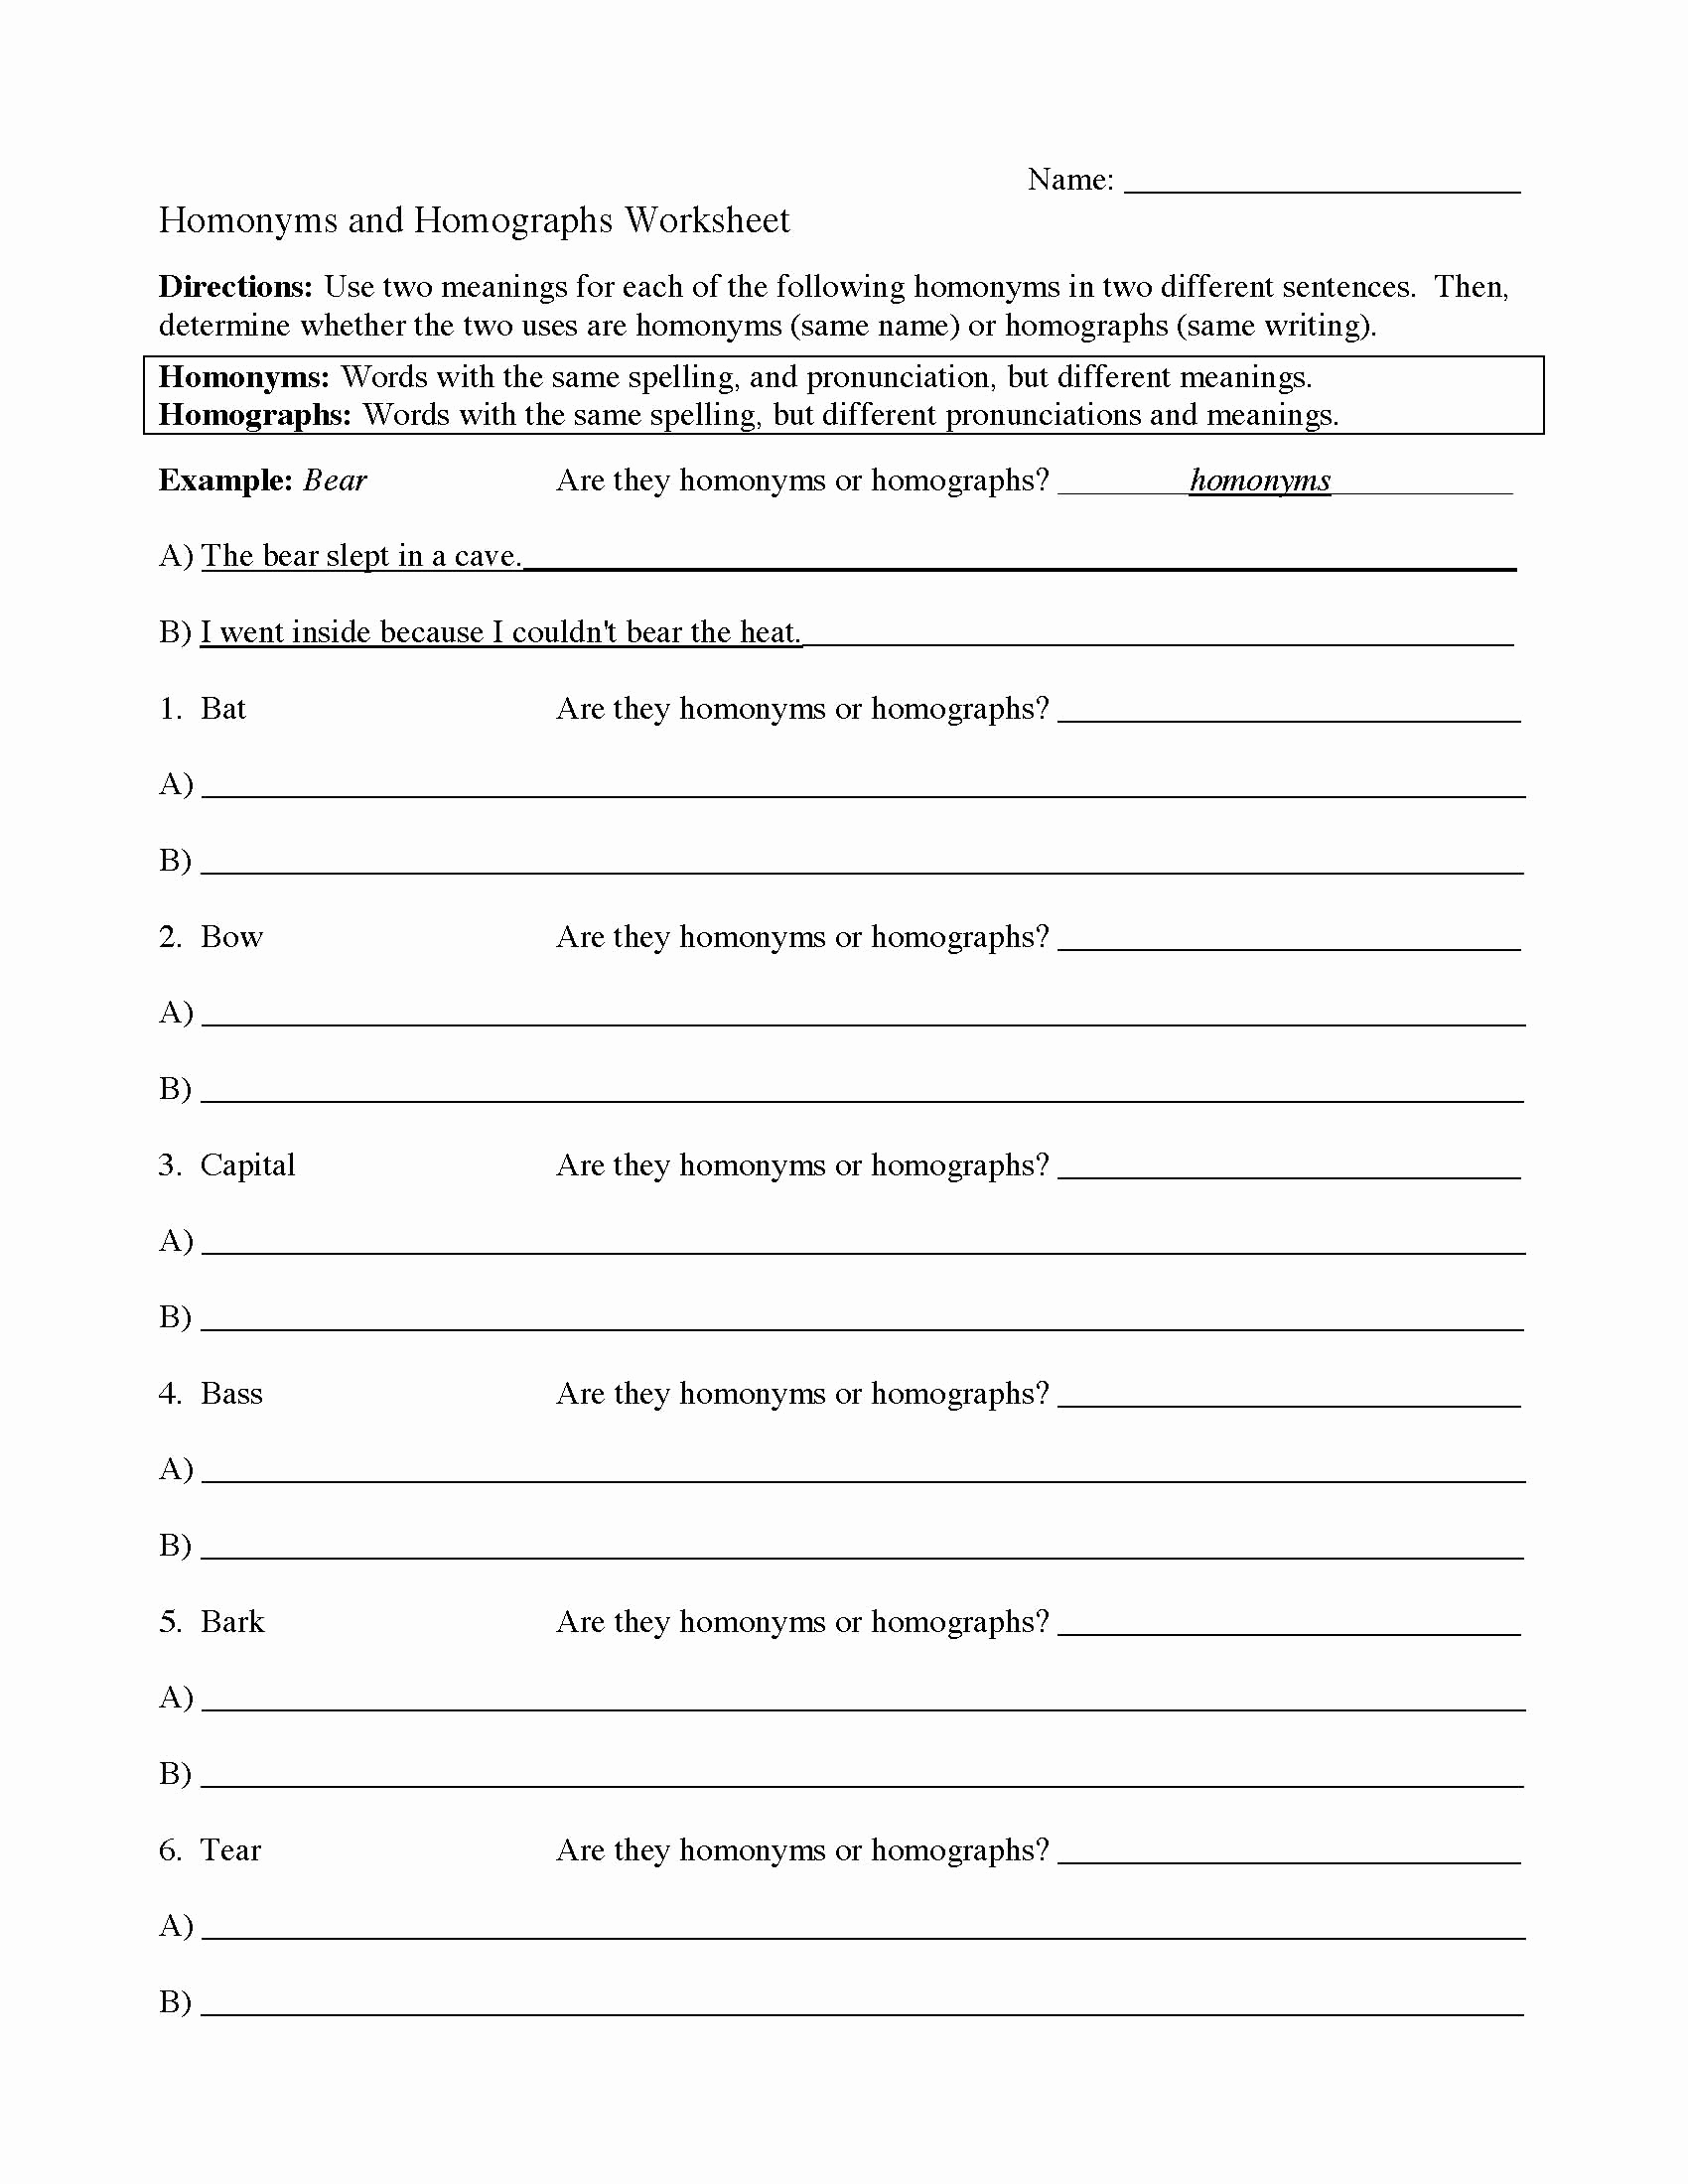 Homographs and Homophones Worksheets New 20 Homograph Worksheet 5th Grade